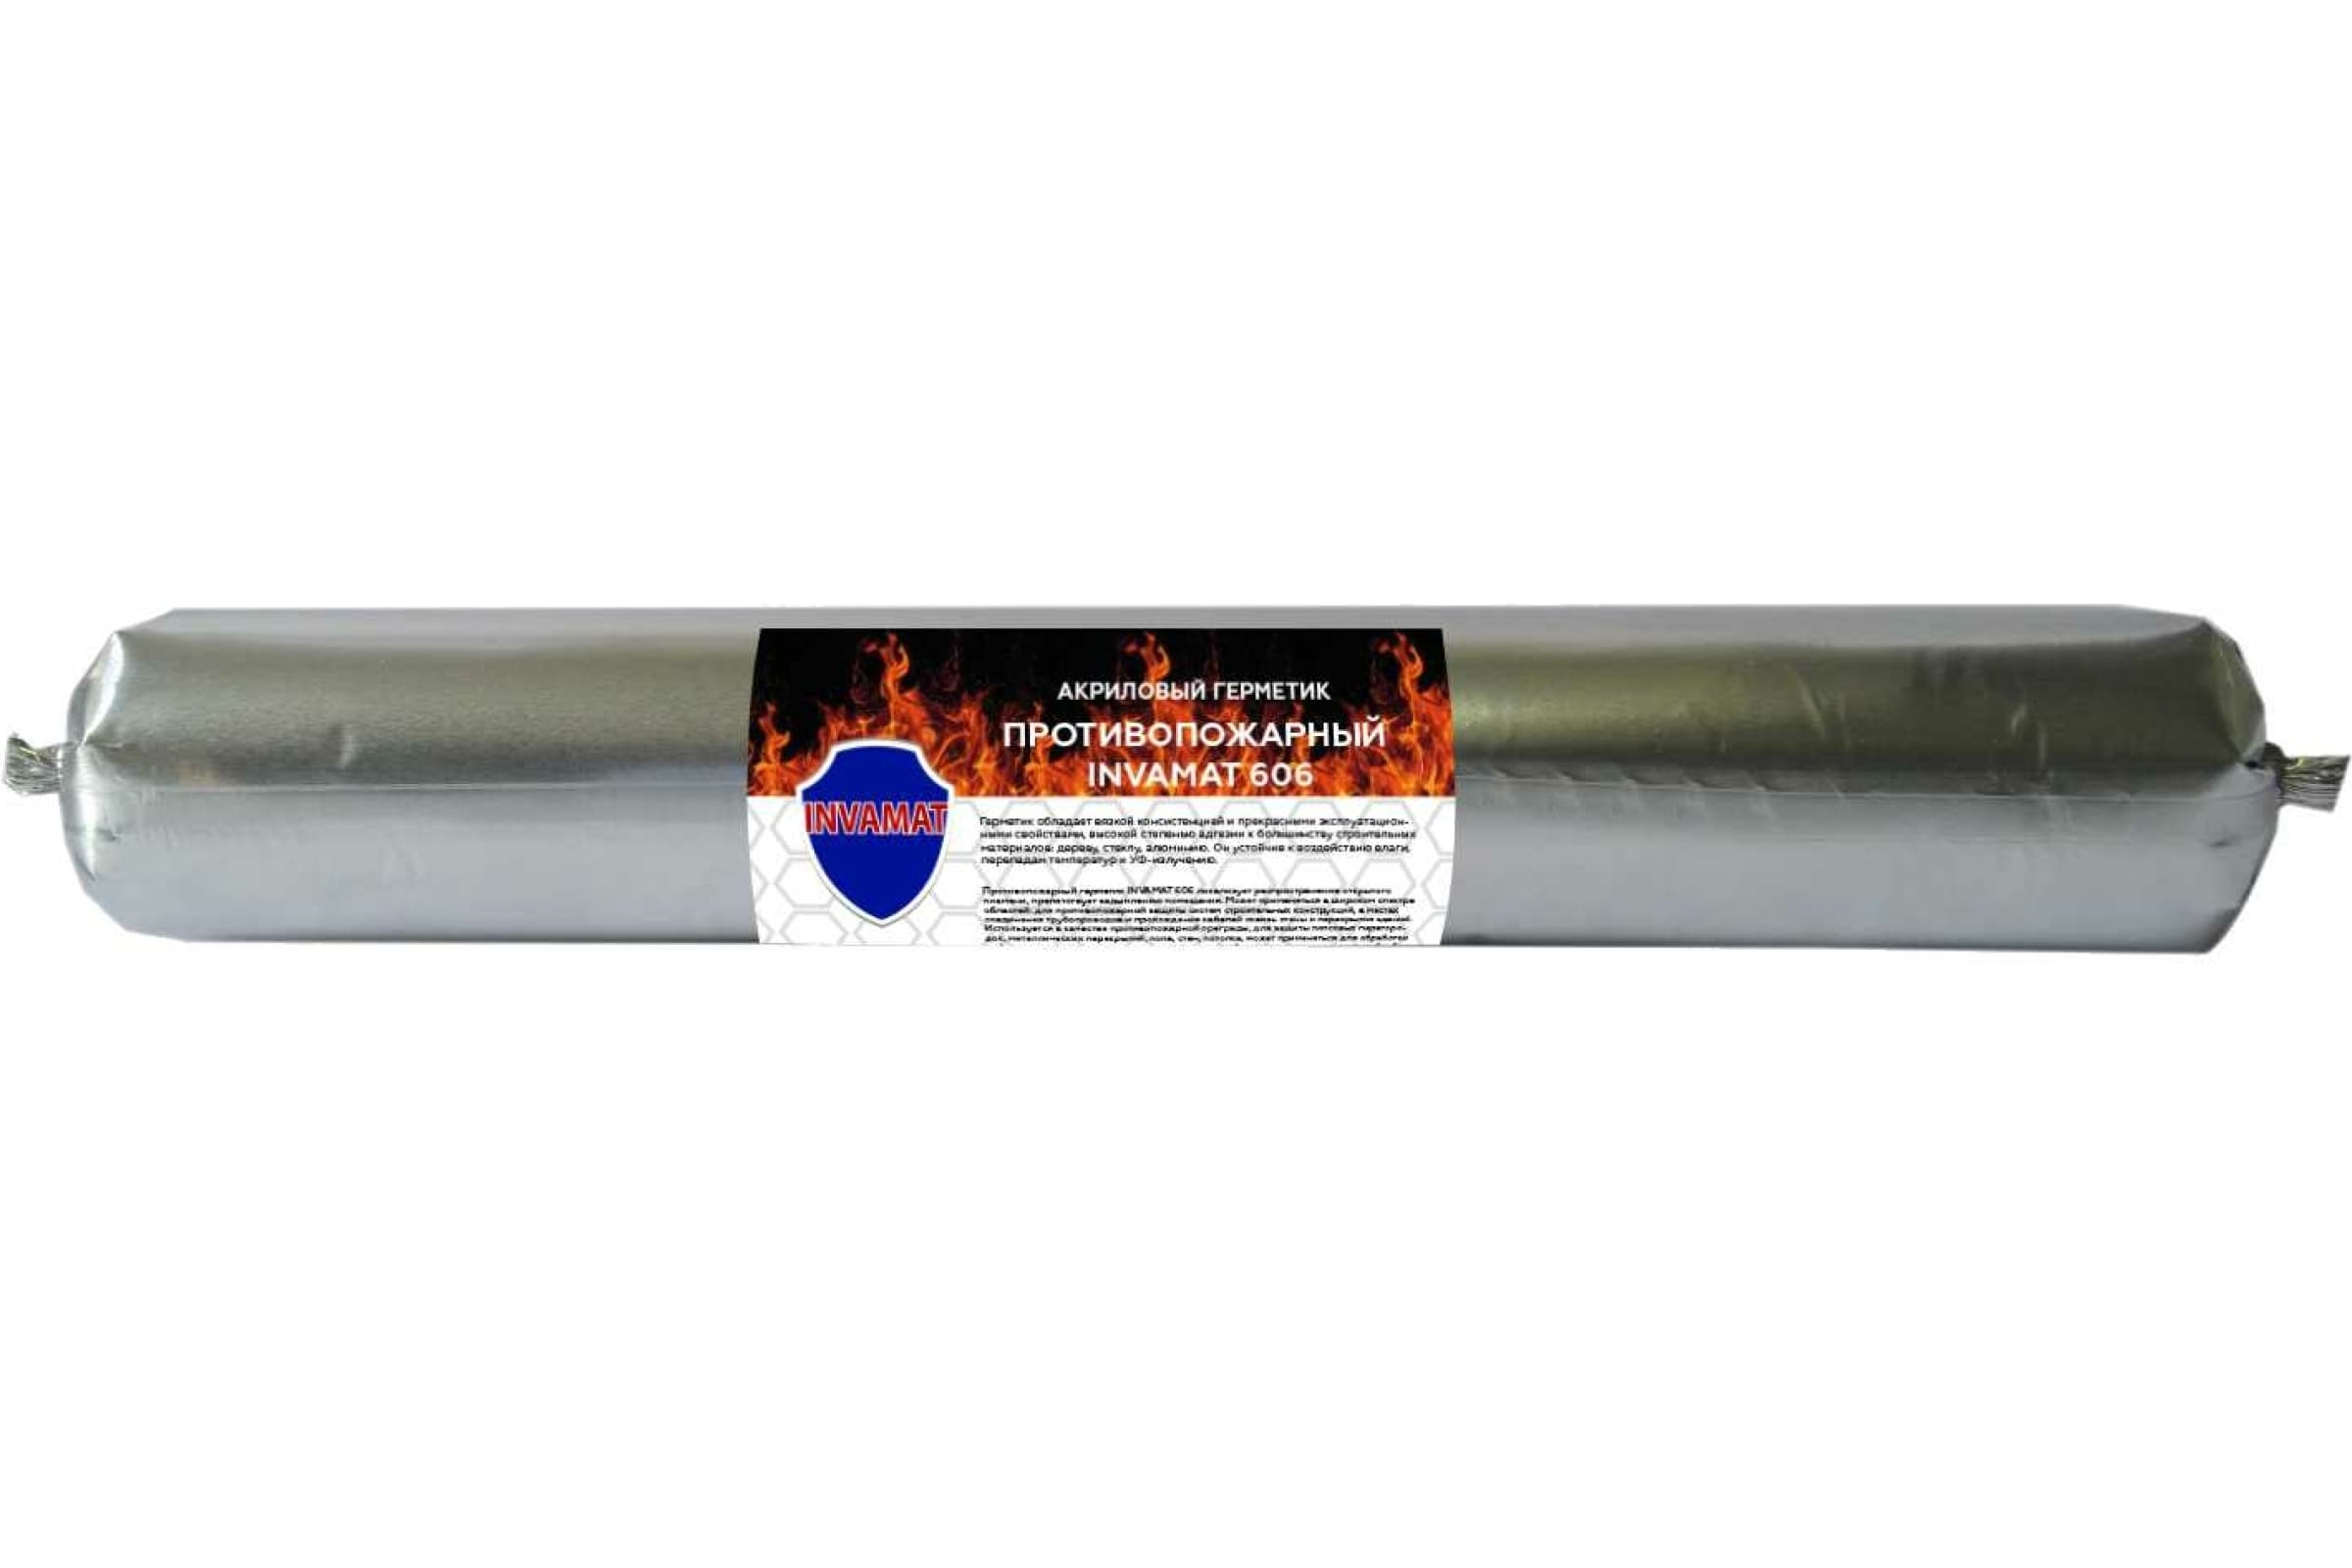 Герметик противопожарный акриловый INVAMAT 606 белый 600 мл акриловый герметик для вентиляционных каналов akfix